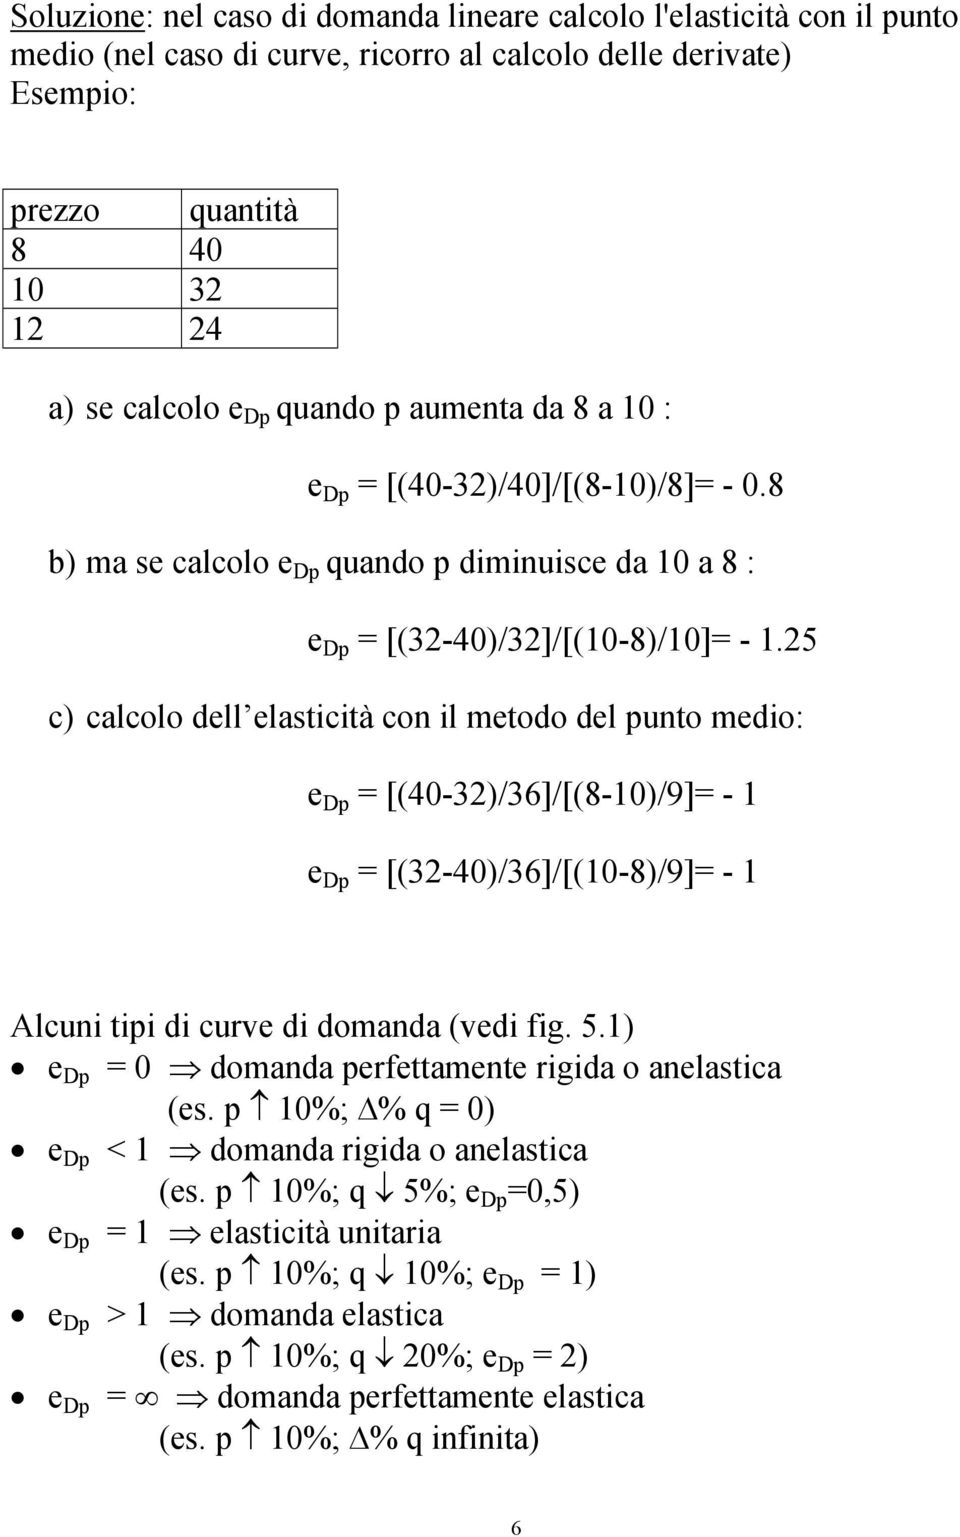 25 c) calcolo dell elasticità con il metodo del punto medio: e Dp = [(40-32)/36]/[(8-10)/9]= - 1 e Dp = [(32-40)/36]/[(10-8)/9]= - 1 Alcuni tipi di curve di domanda (vedi fig. 5.